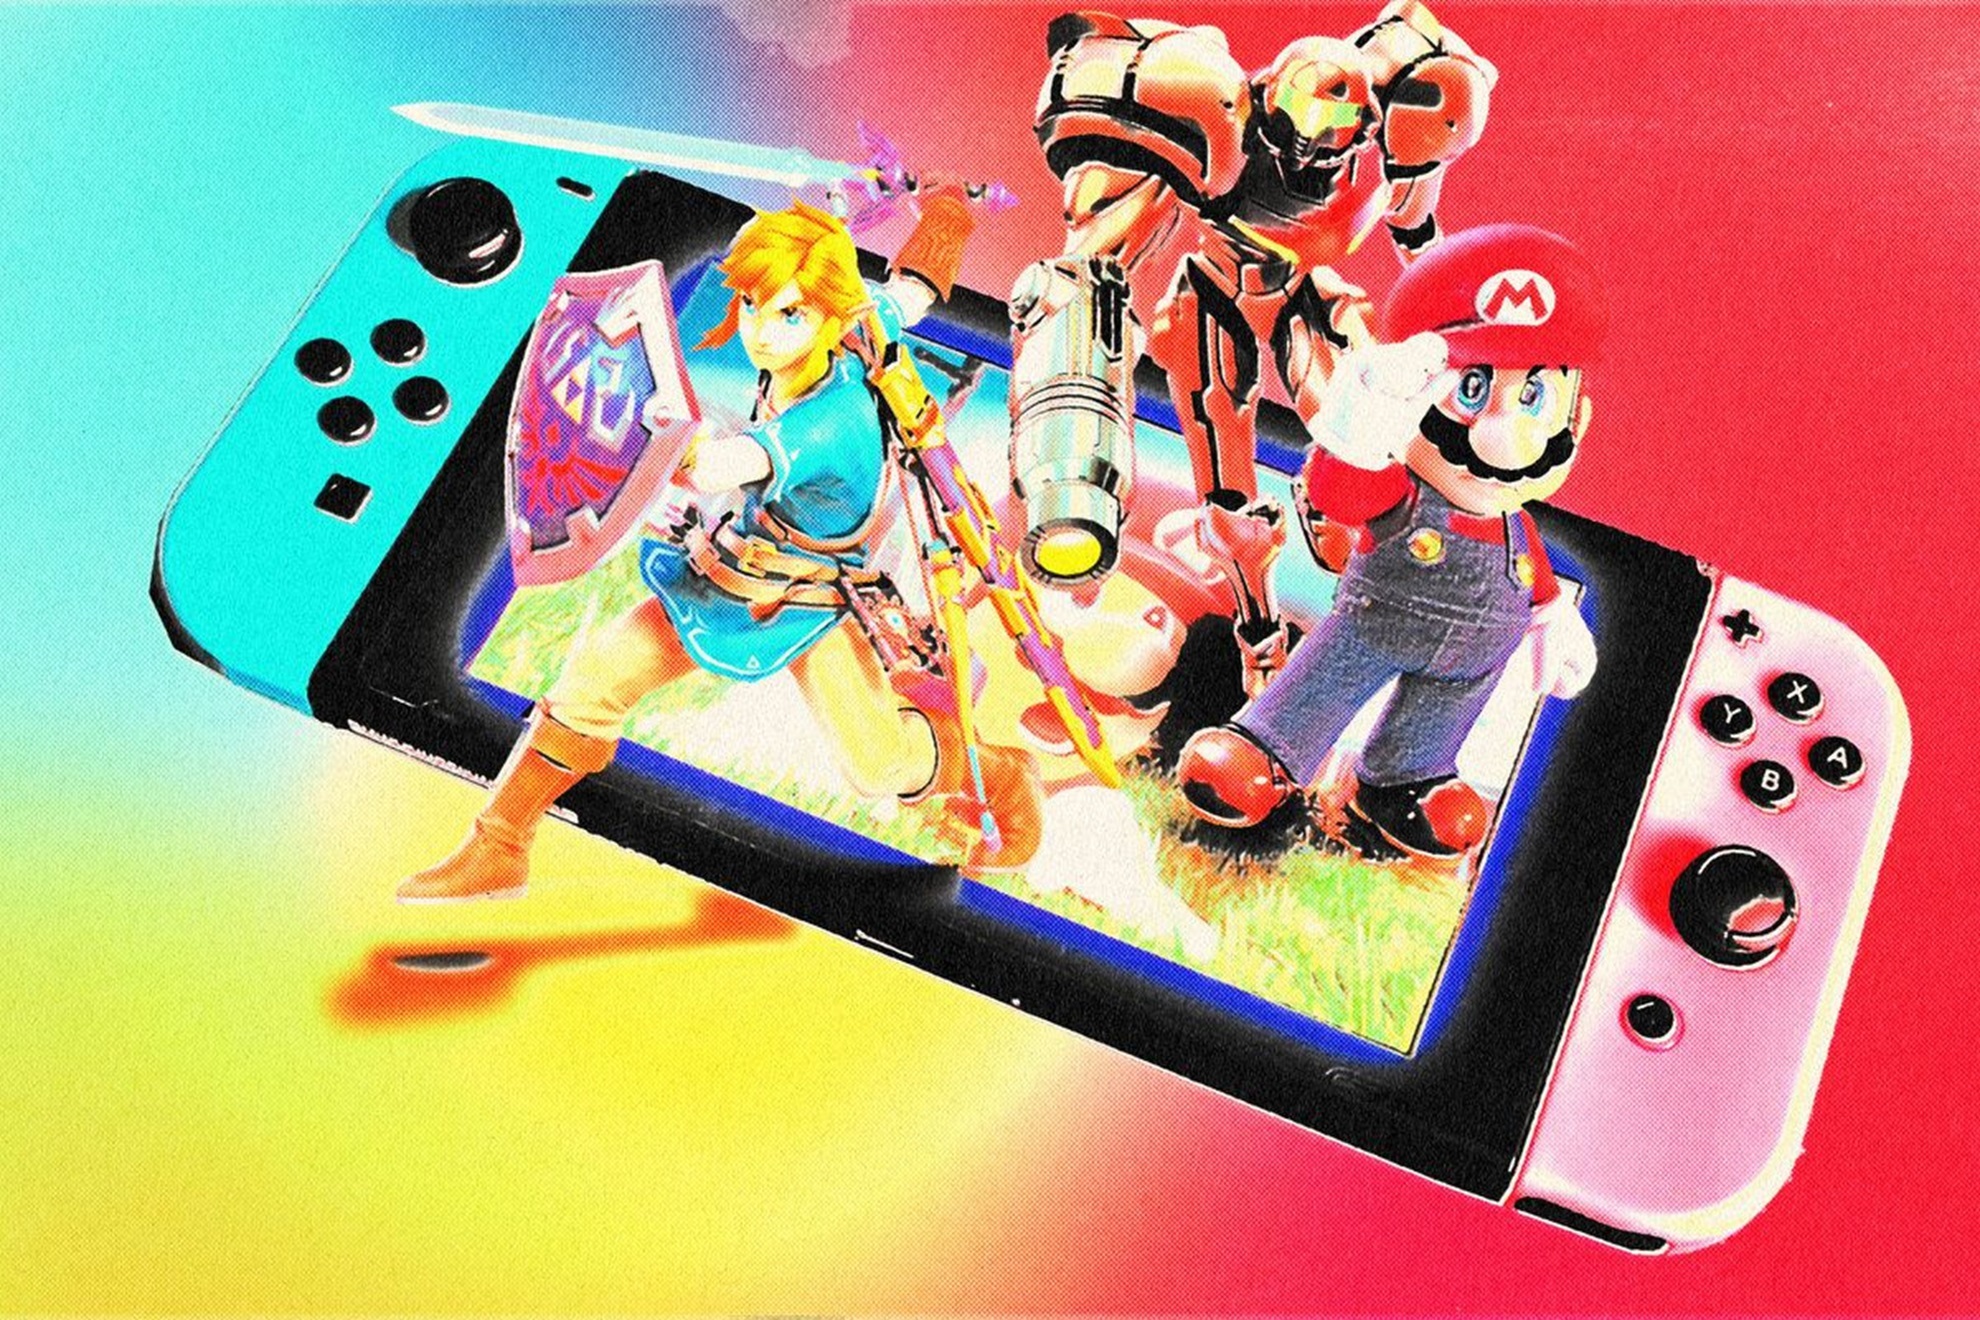 La Nintendo Switch 2 llevara aos lista para salir al mercado y este sera su precio